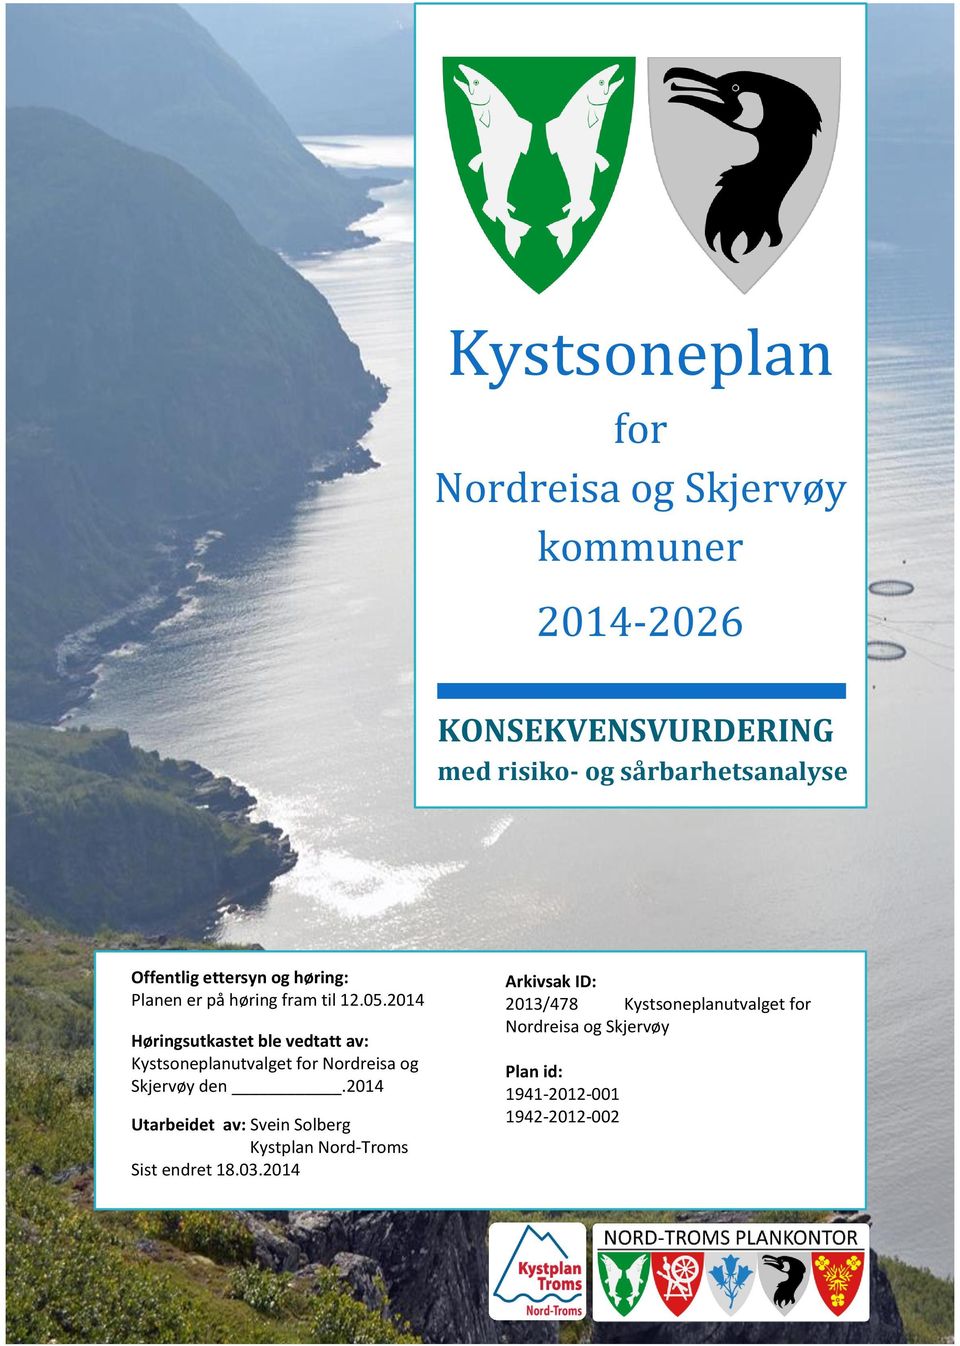 2014 Høringsutkastet ble vedtatt av: Kystsoneplanutvalget for Nordreisa og Skjervøy den.